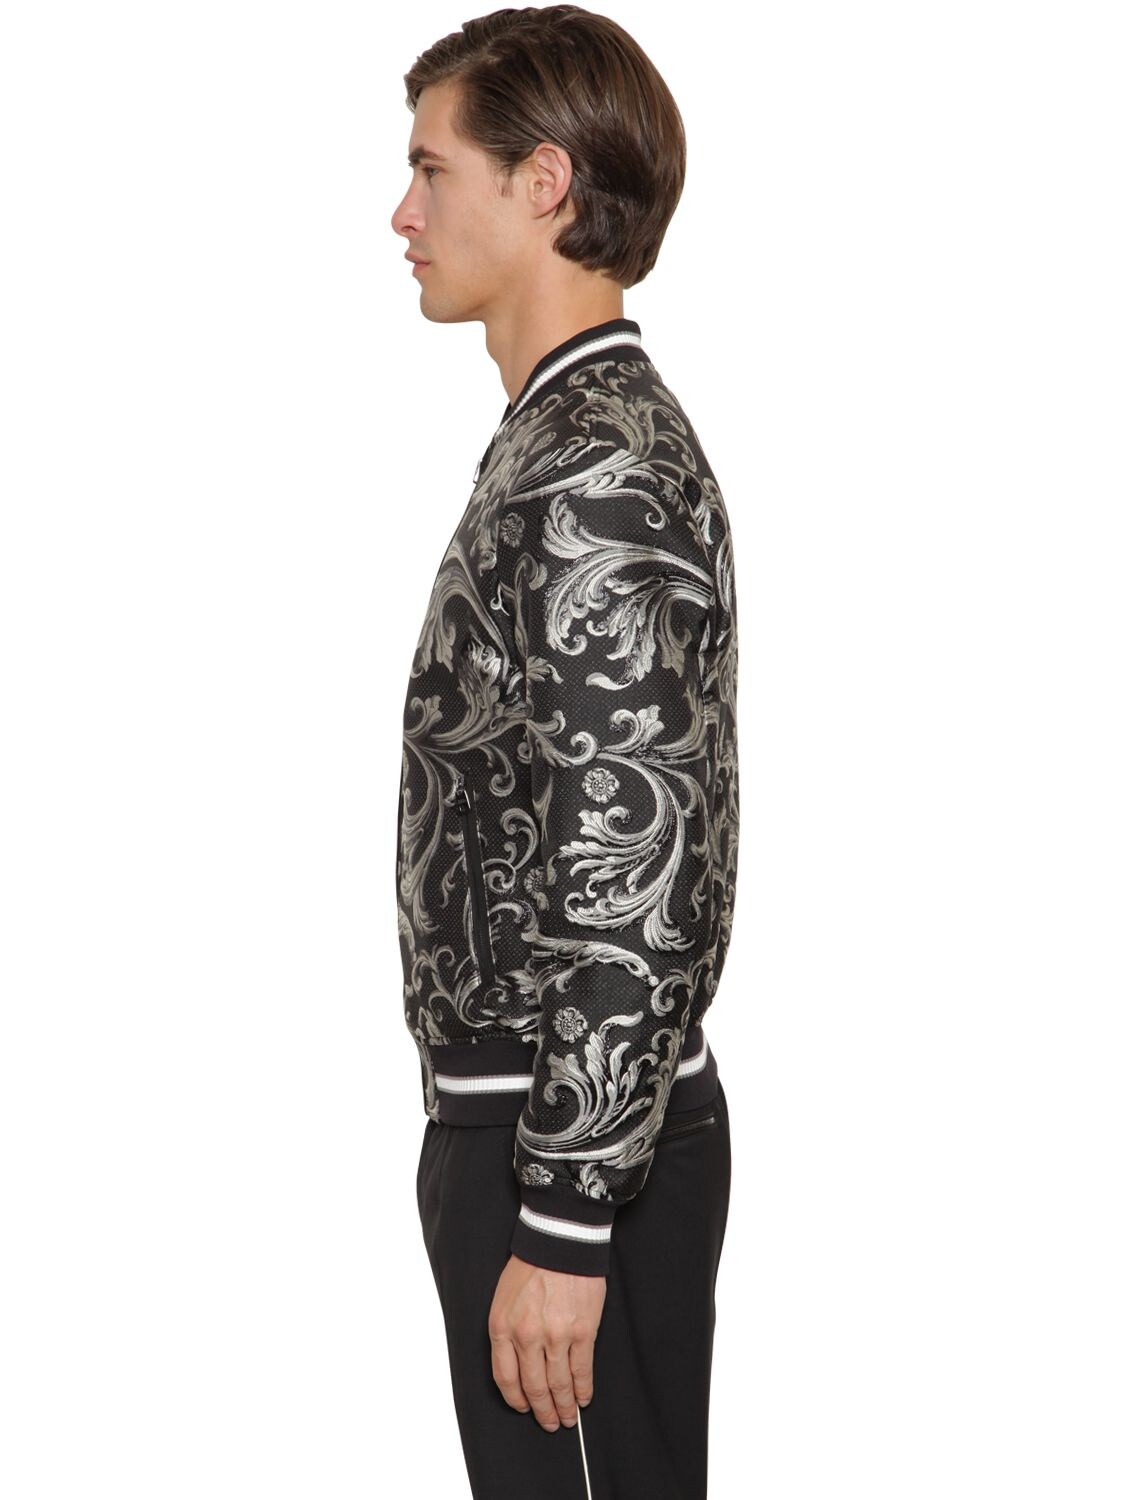 Christian Dior Oblique Bomber Jacket